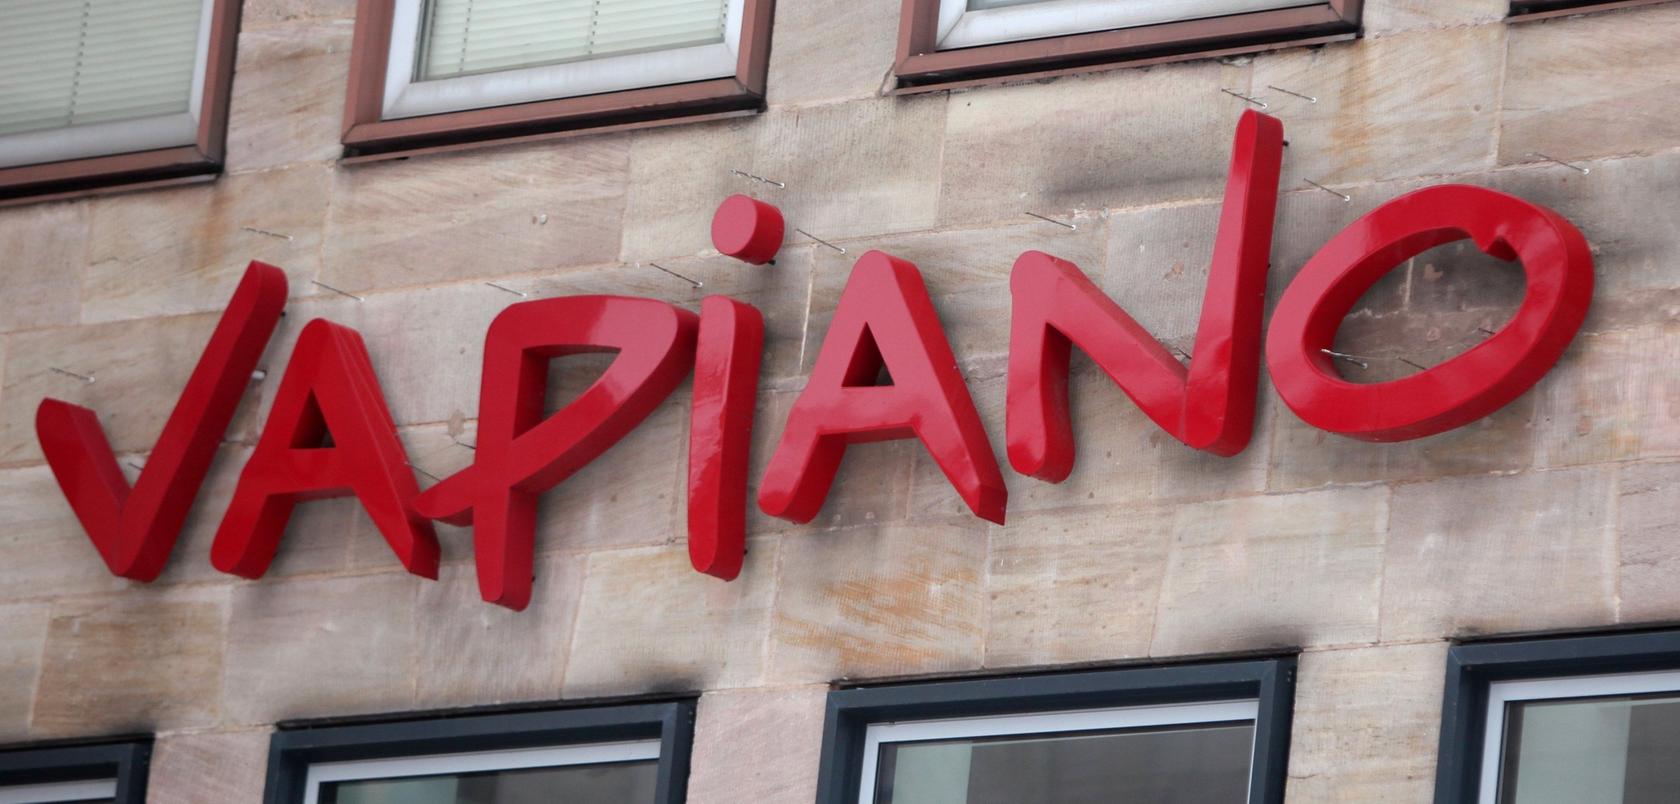 In vielen deutschen Innenstädten betreibt Vapiano Filialen, oft sind sie nicht profitabel.